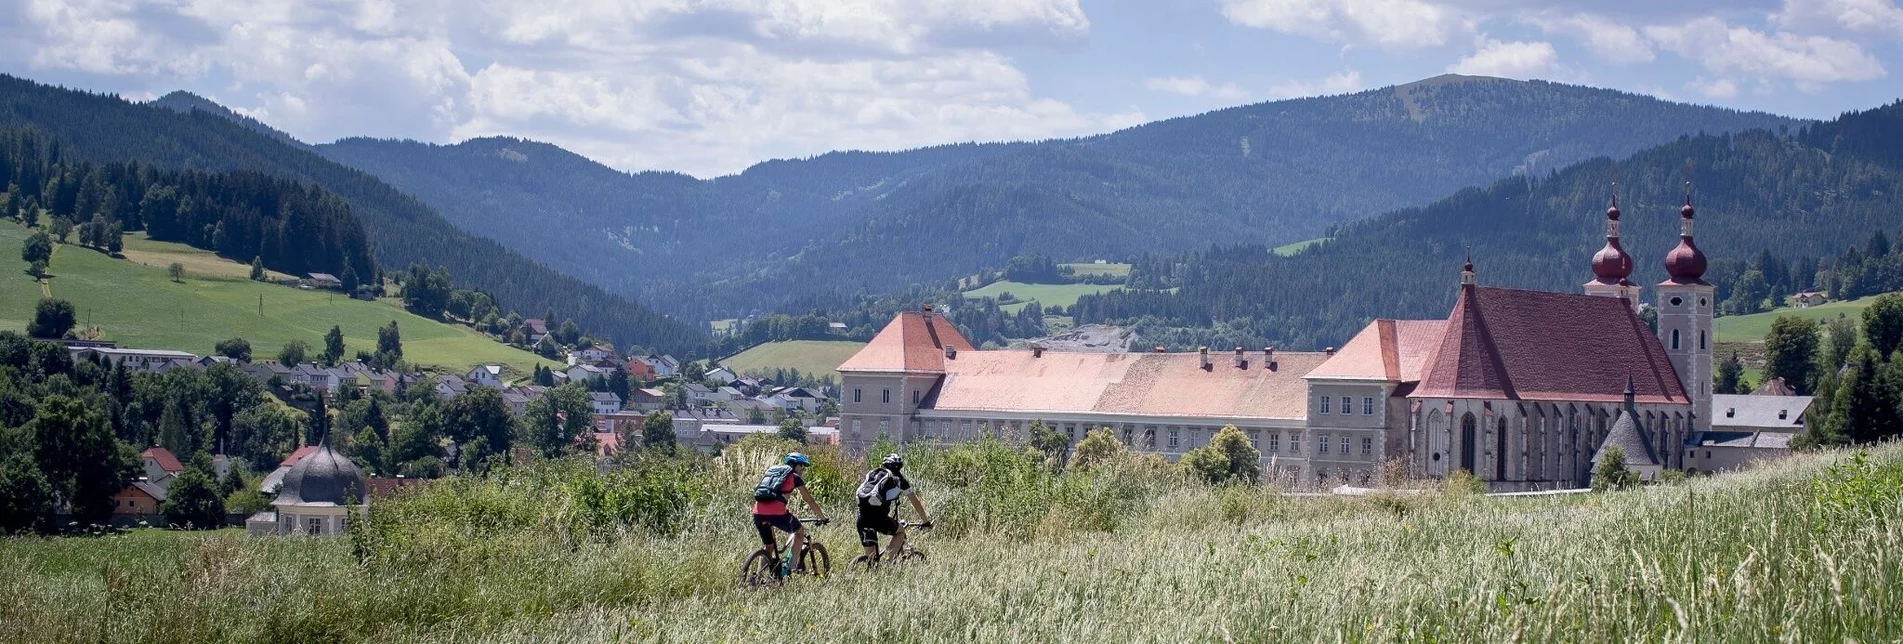 Mountain Biking Via Natura cycle path stage 2 - Touren-Impression #1 | © Tourismusverband Region Murau